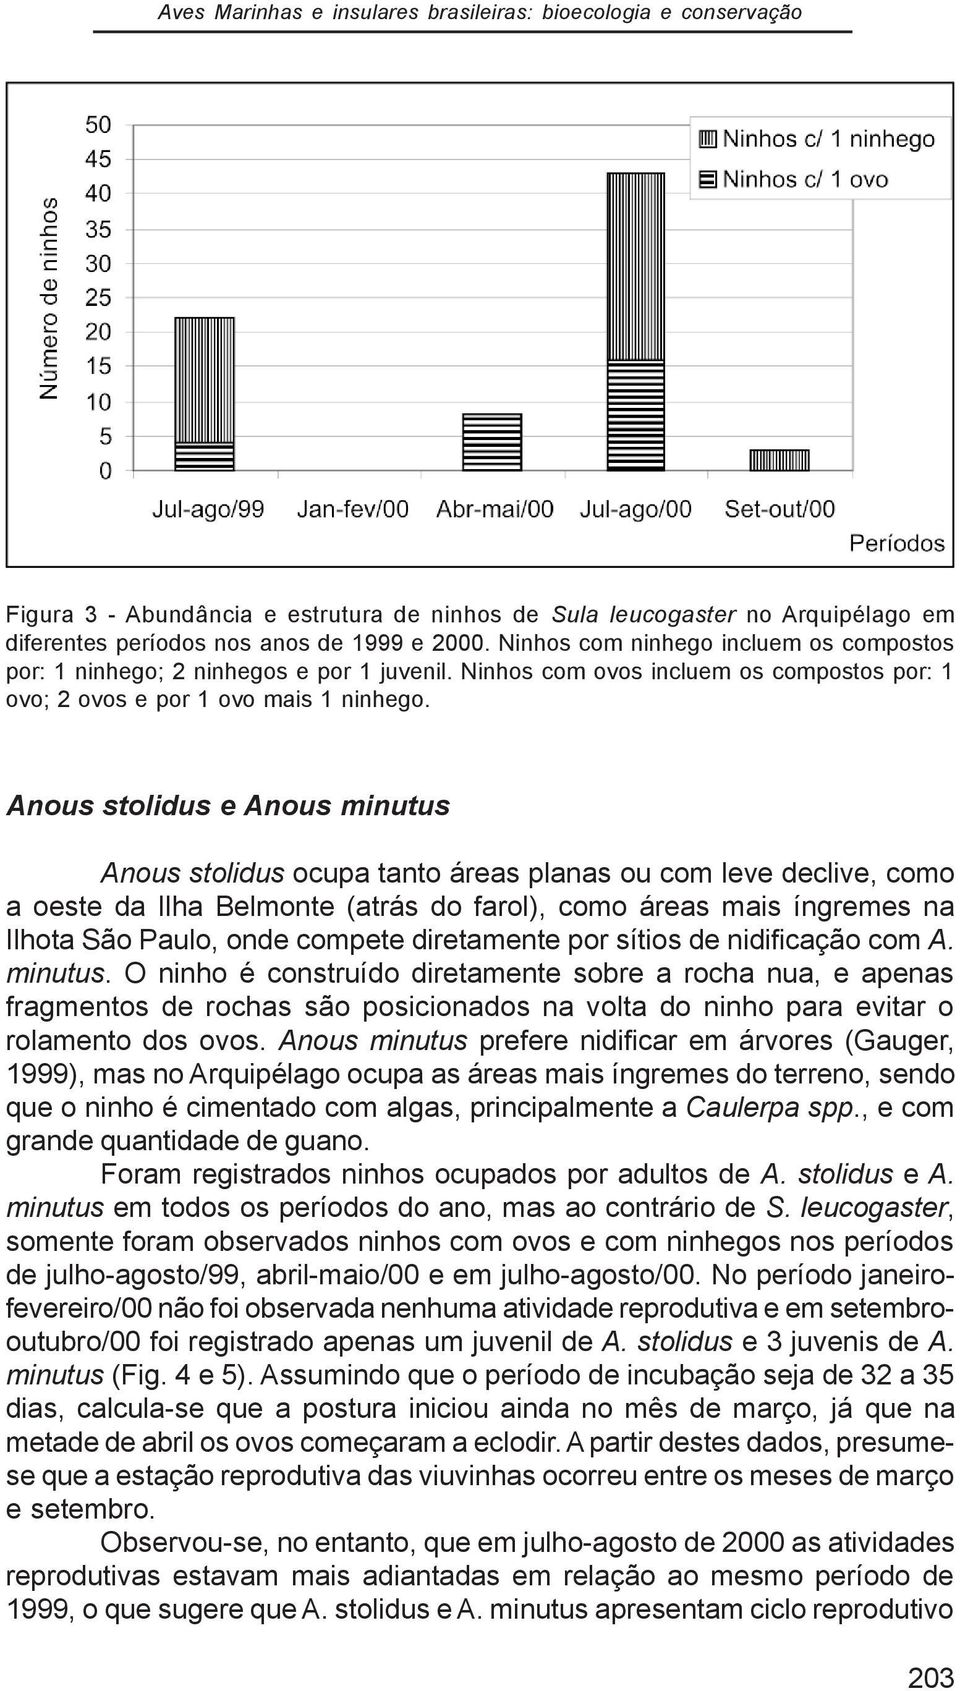 Anous stolidus e Anous minutus Anous stolidus ocupa tanto áreas planas ou com leve declive, como a oeste da Ilha Belmonte (atrás do farol), como áreas mais íngremes na Ilhota São Paulo, onde compete